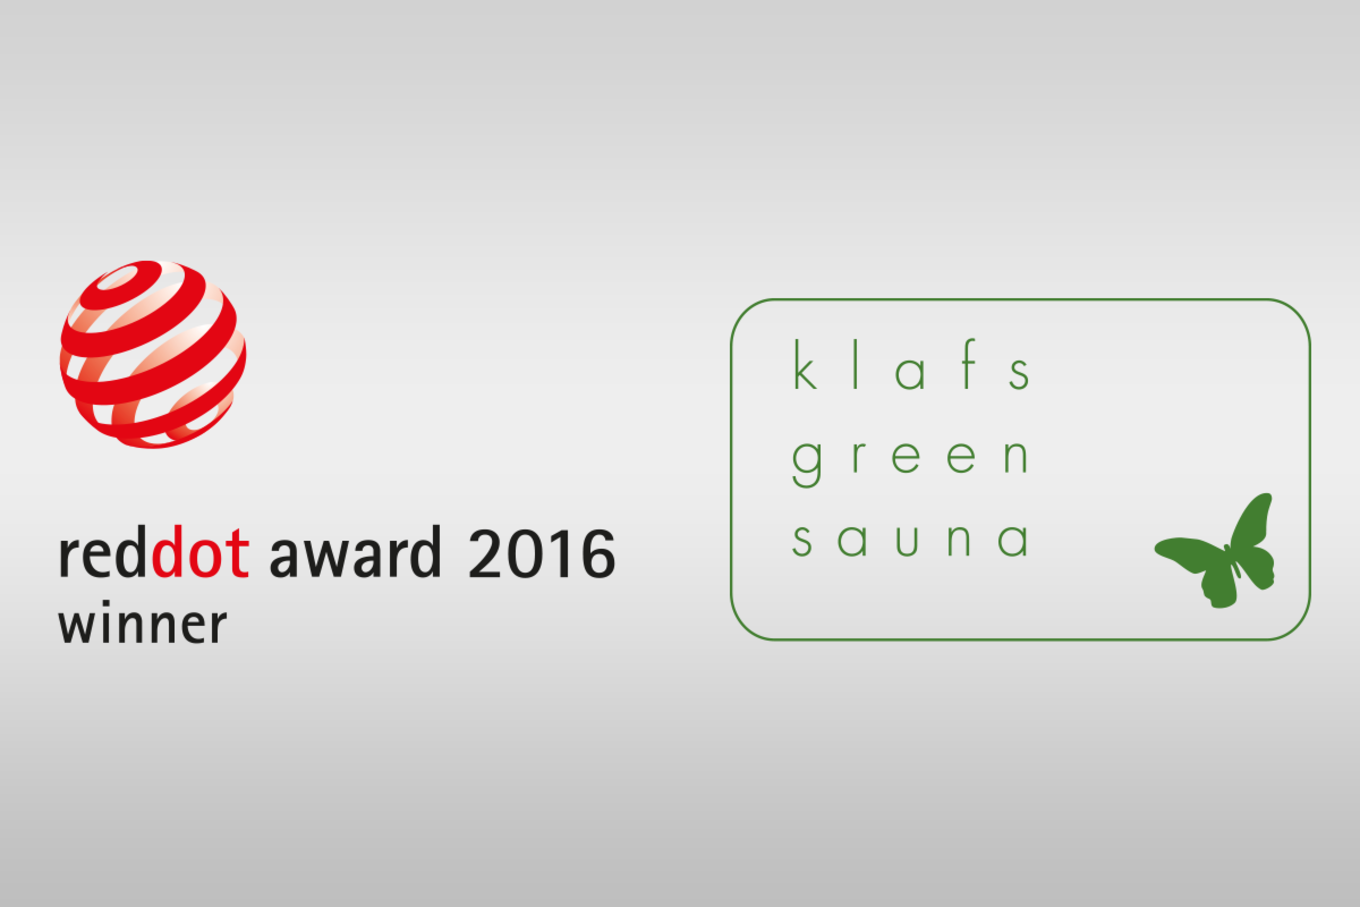 Klafs Gütesiegel: Reddot Award und Klafs Green Sauna